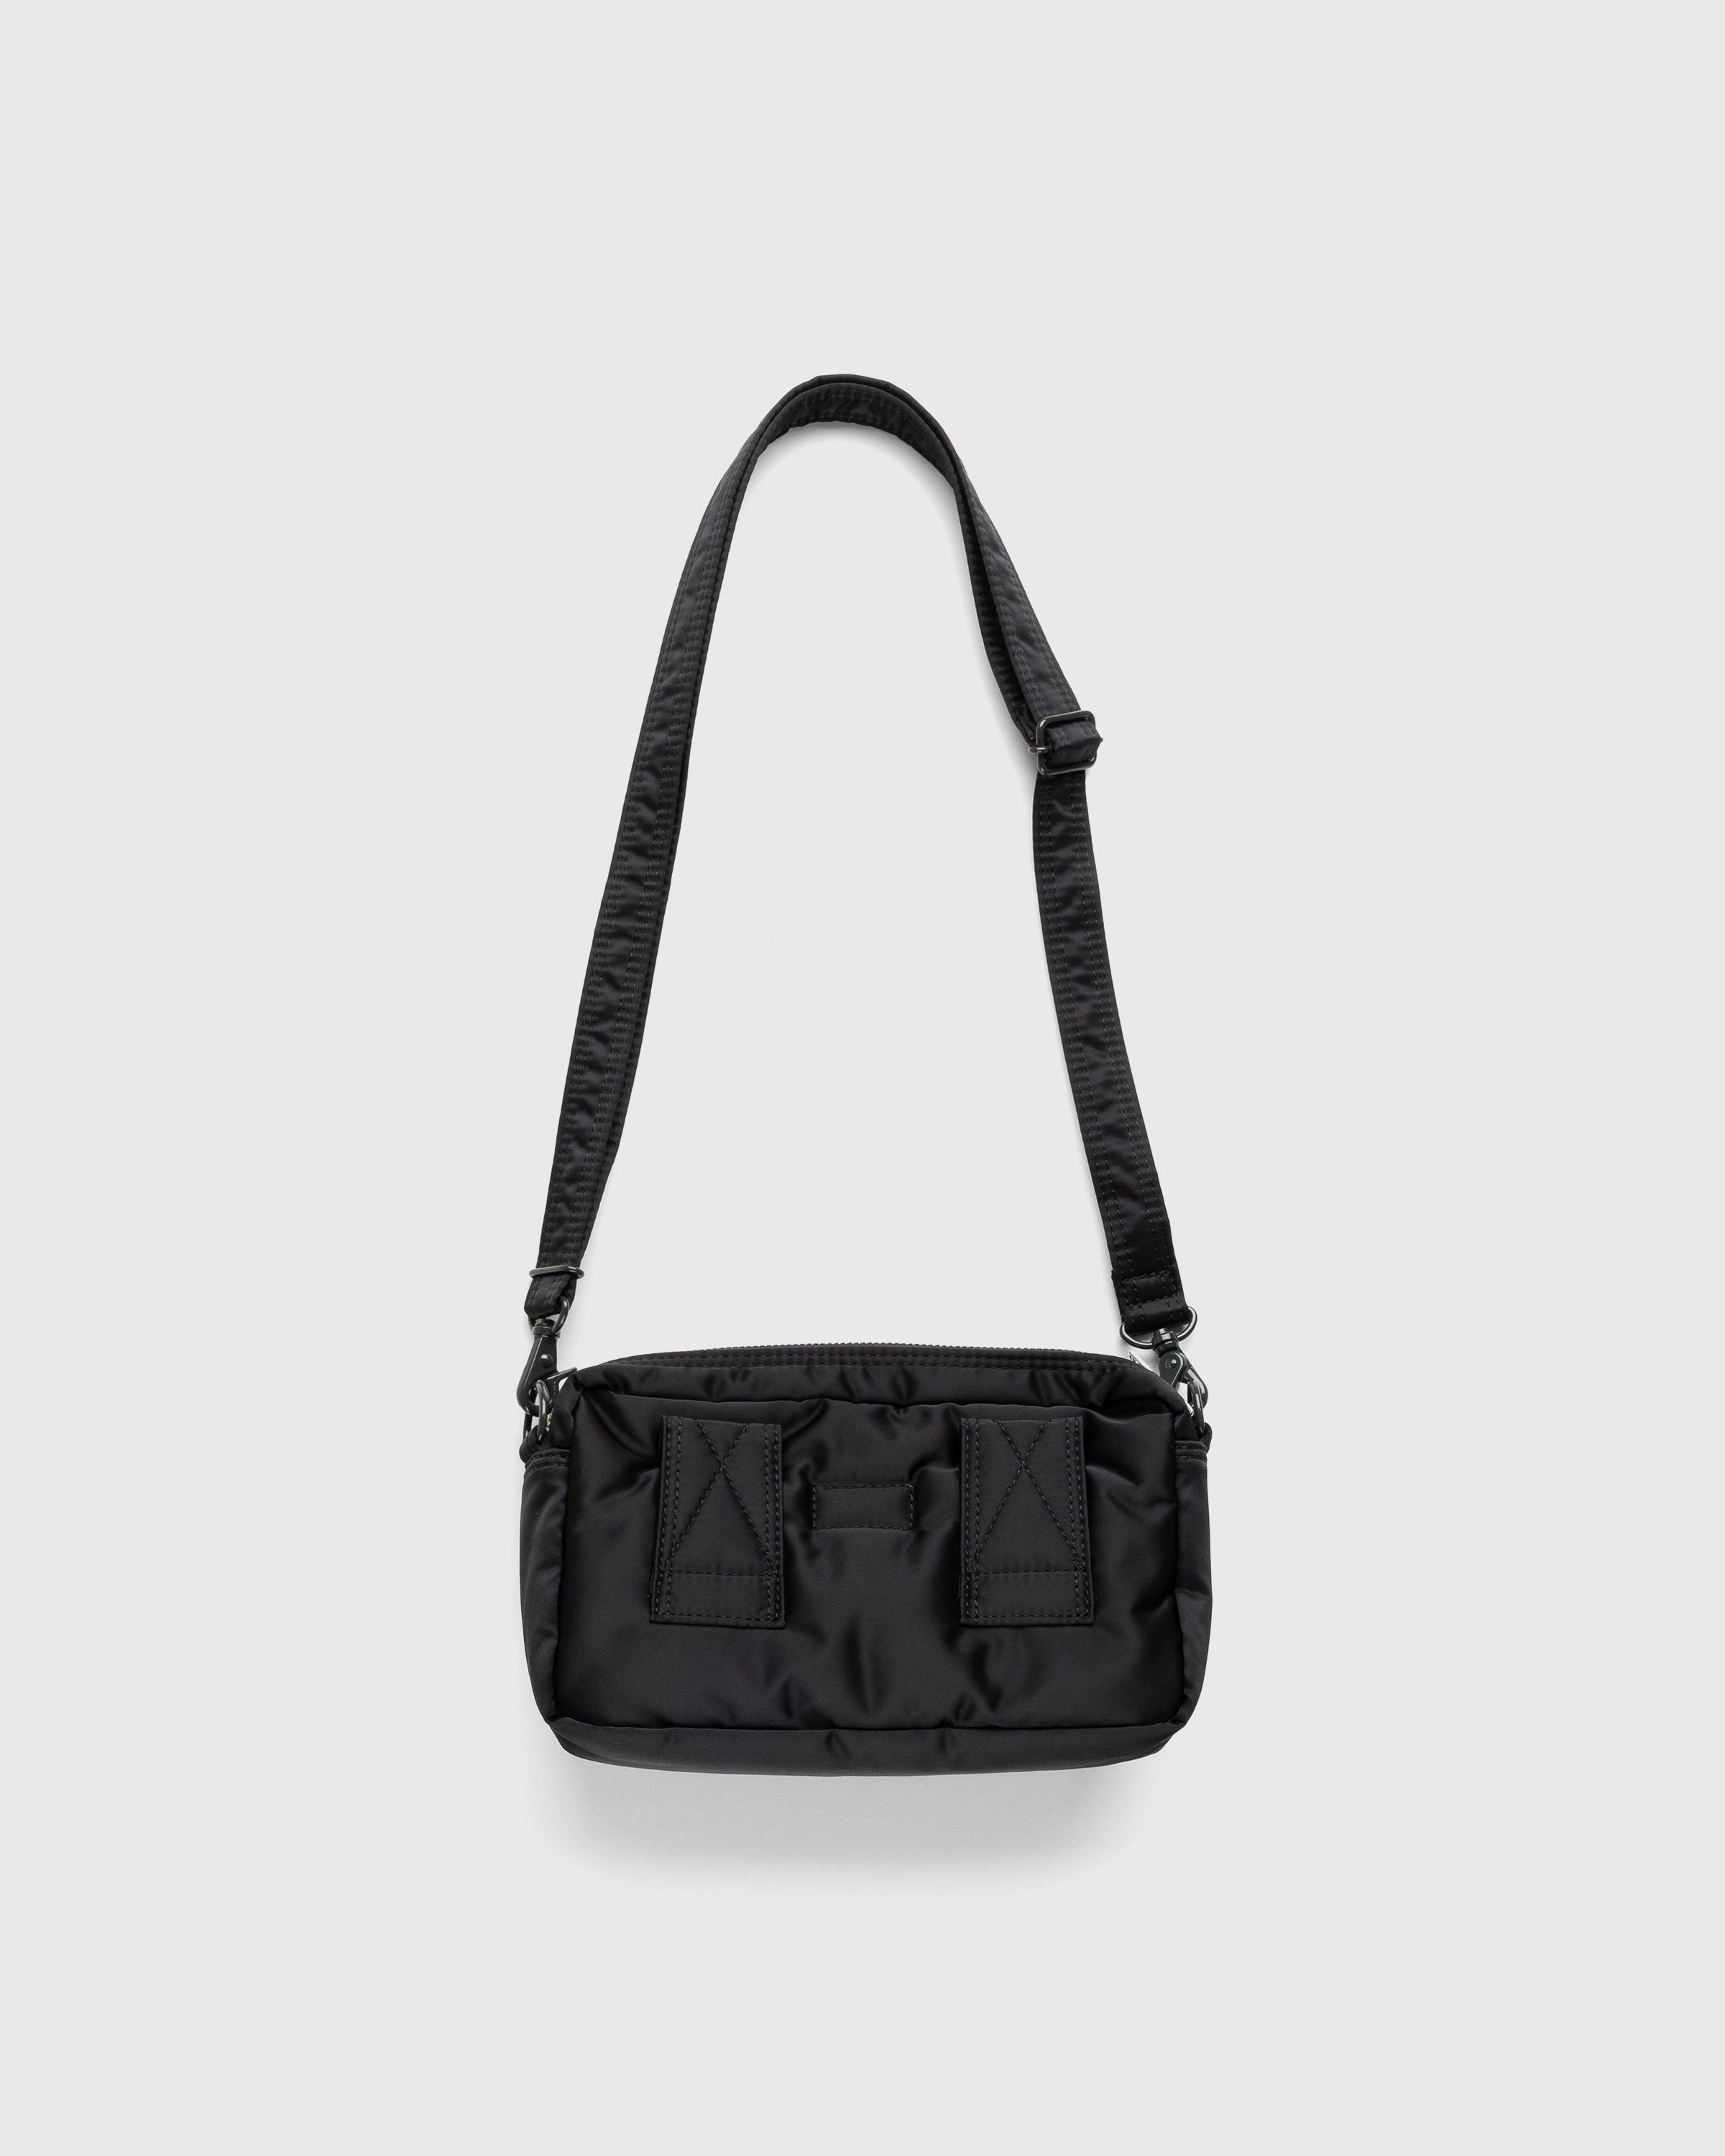 Porter-Yoshida & Co. - Tanker Shoulder Bag Black - Accessories - Black - Image 2